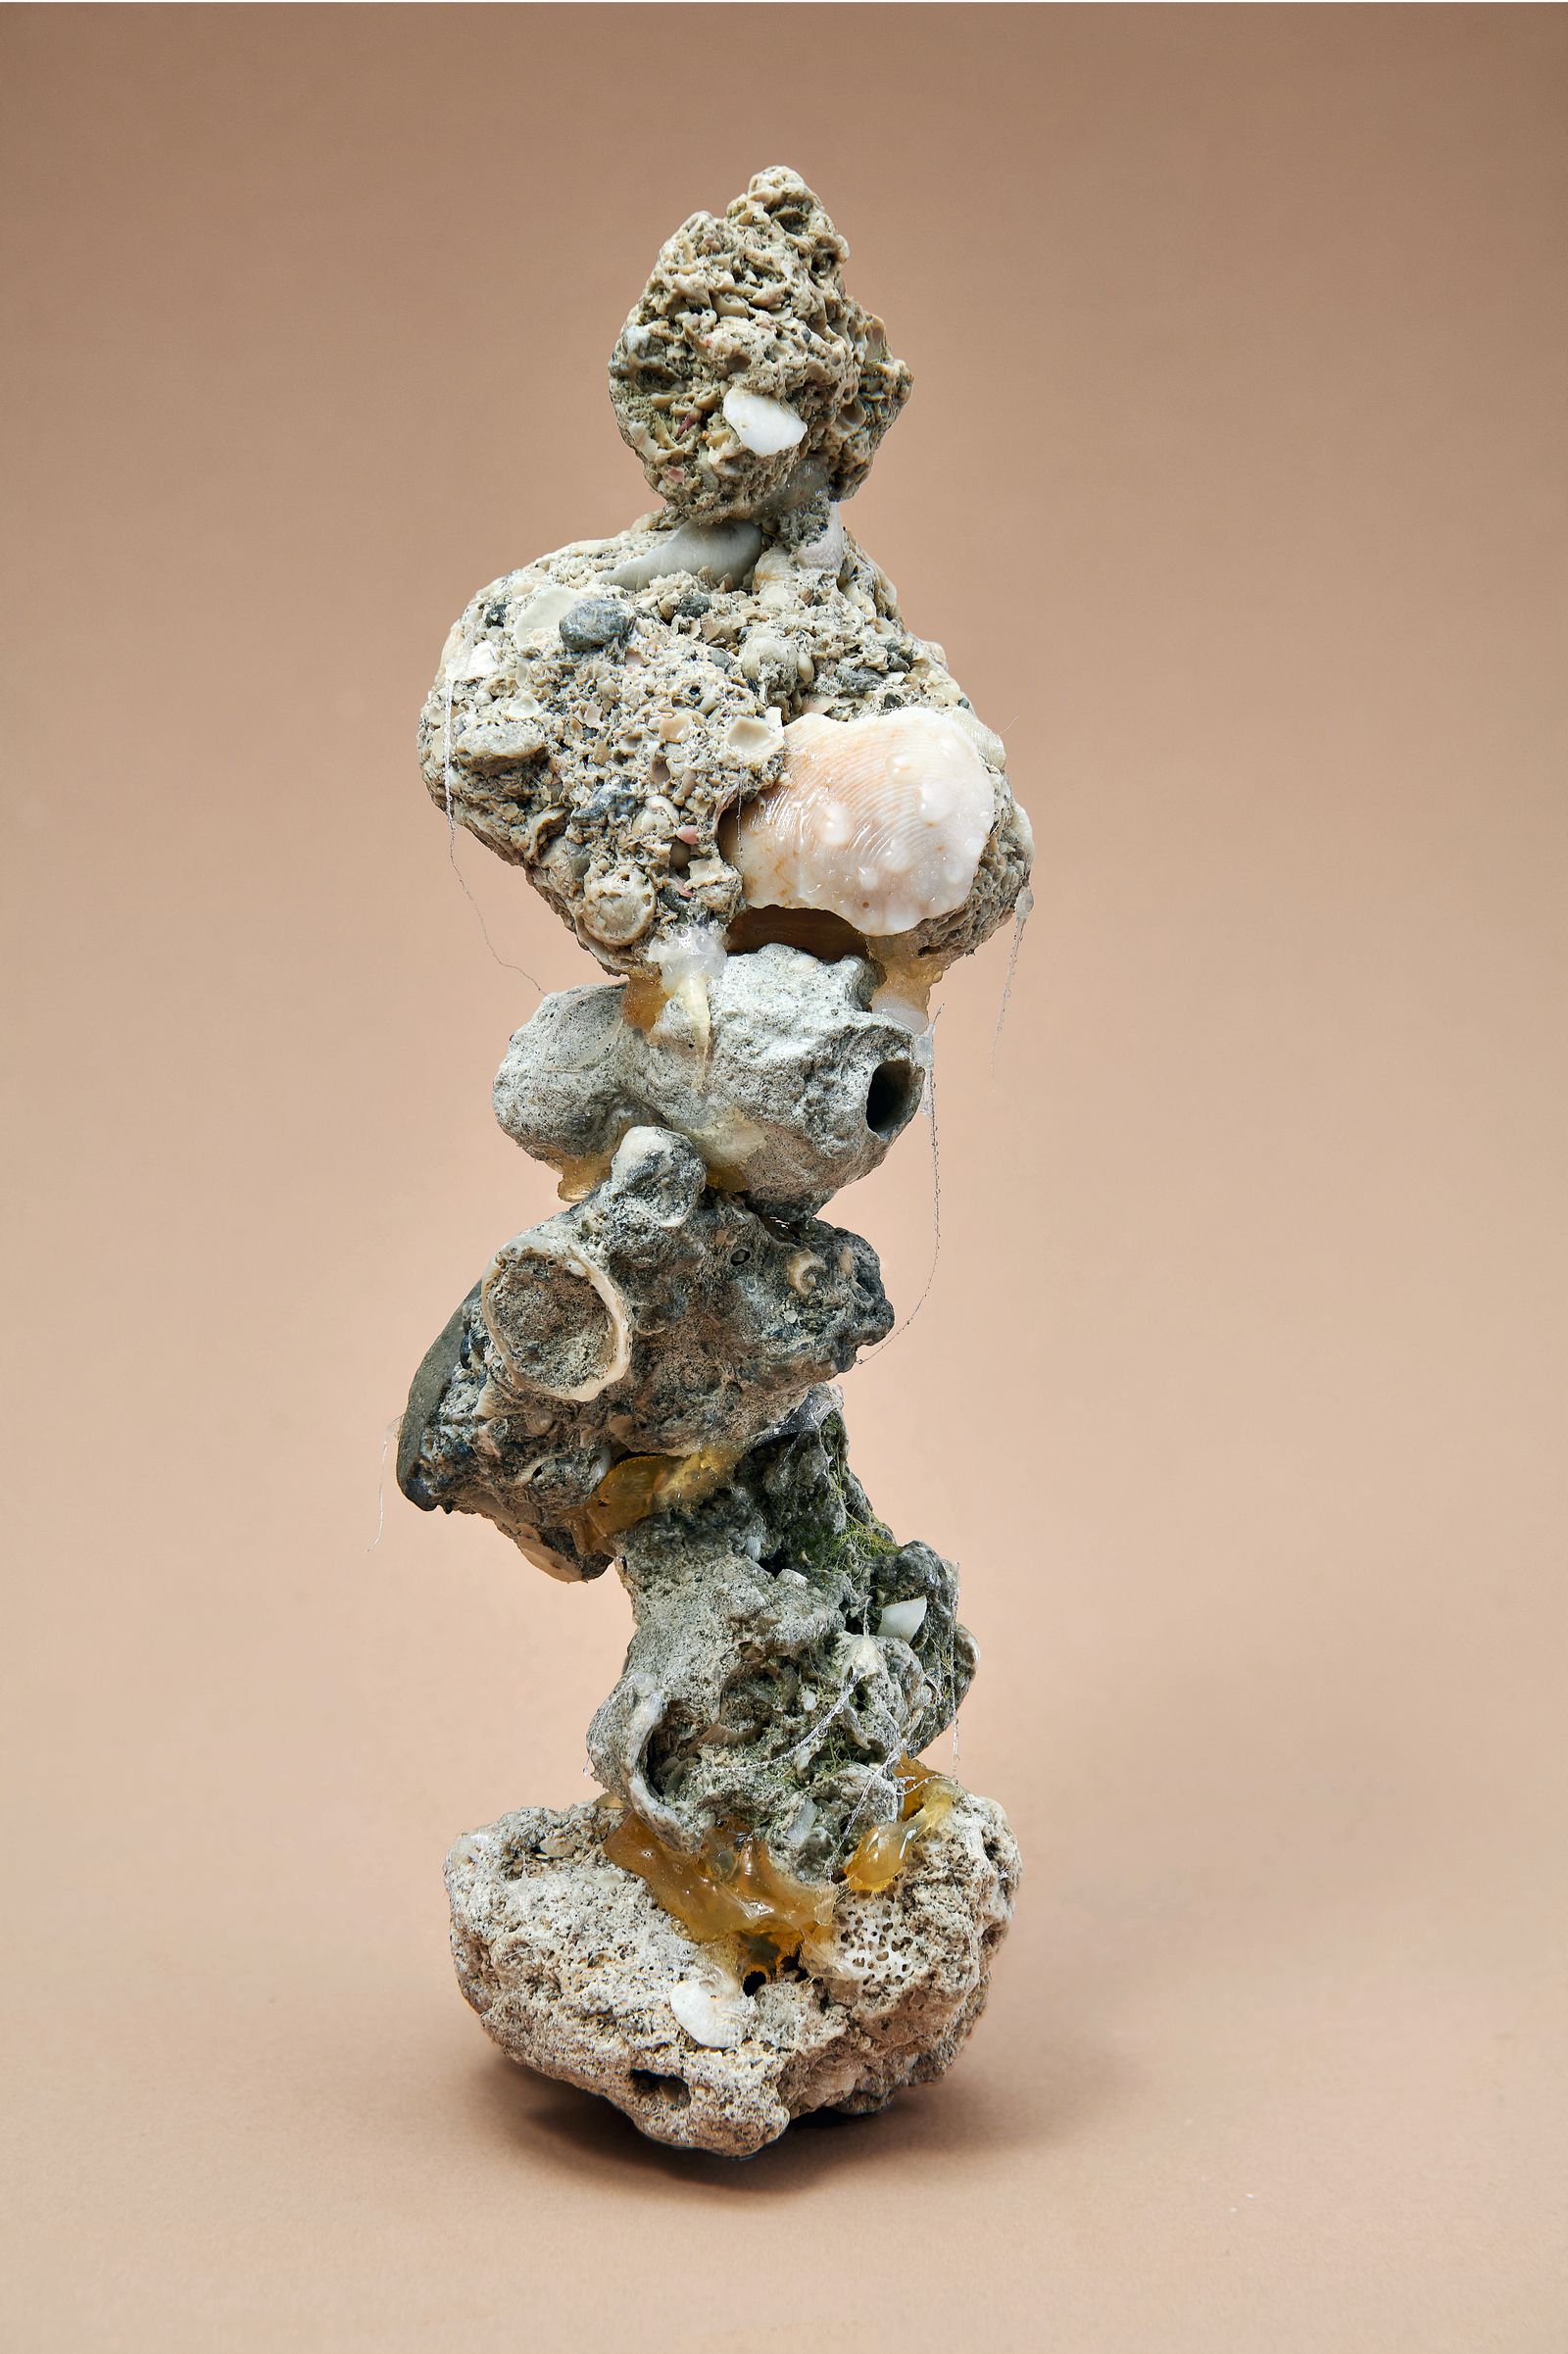 © Nikolai Frerichs - concrete stones found on a beach in Dubai